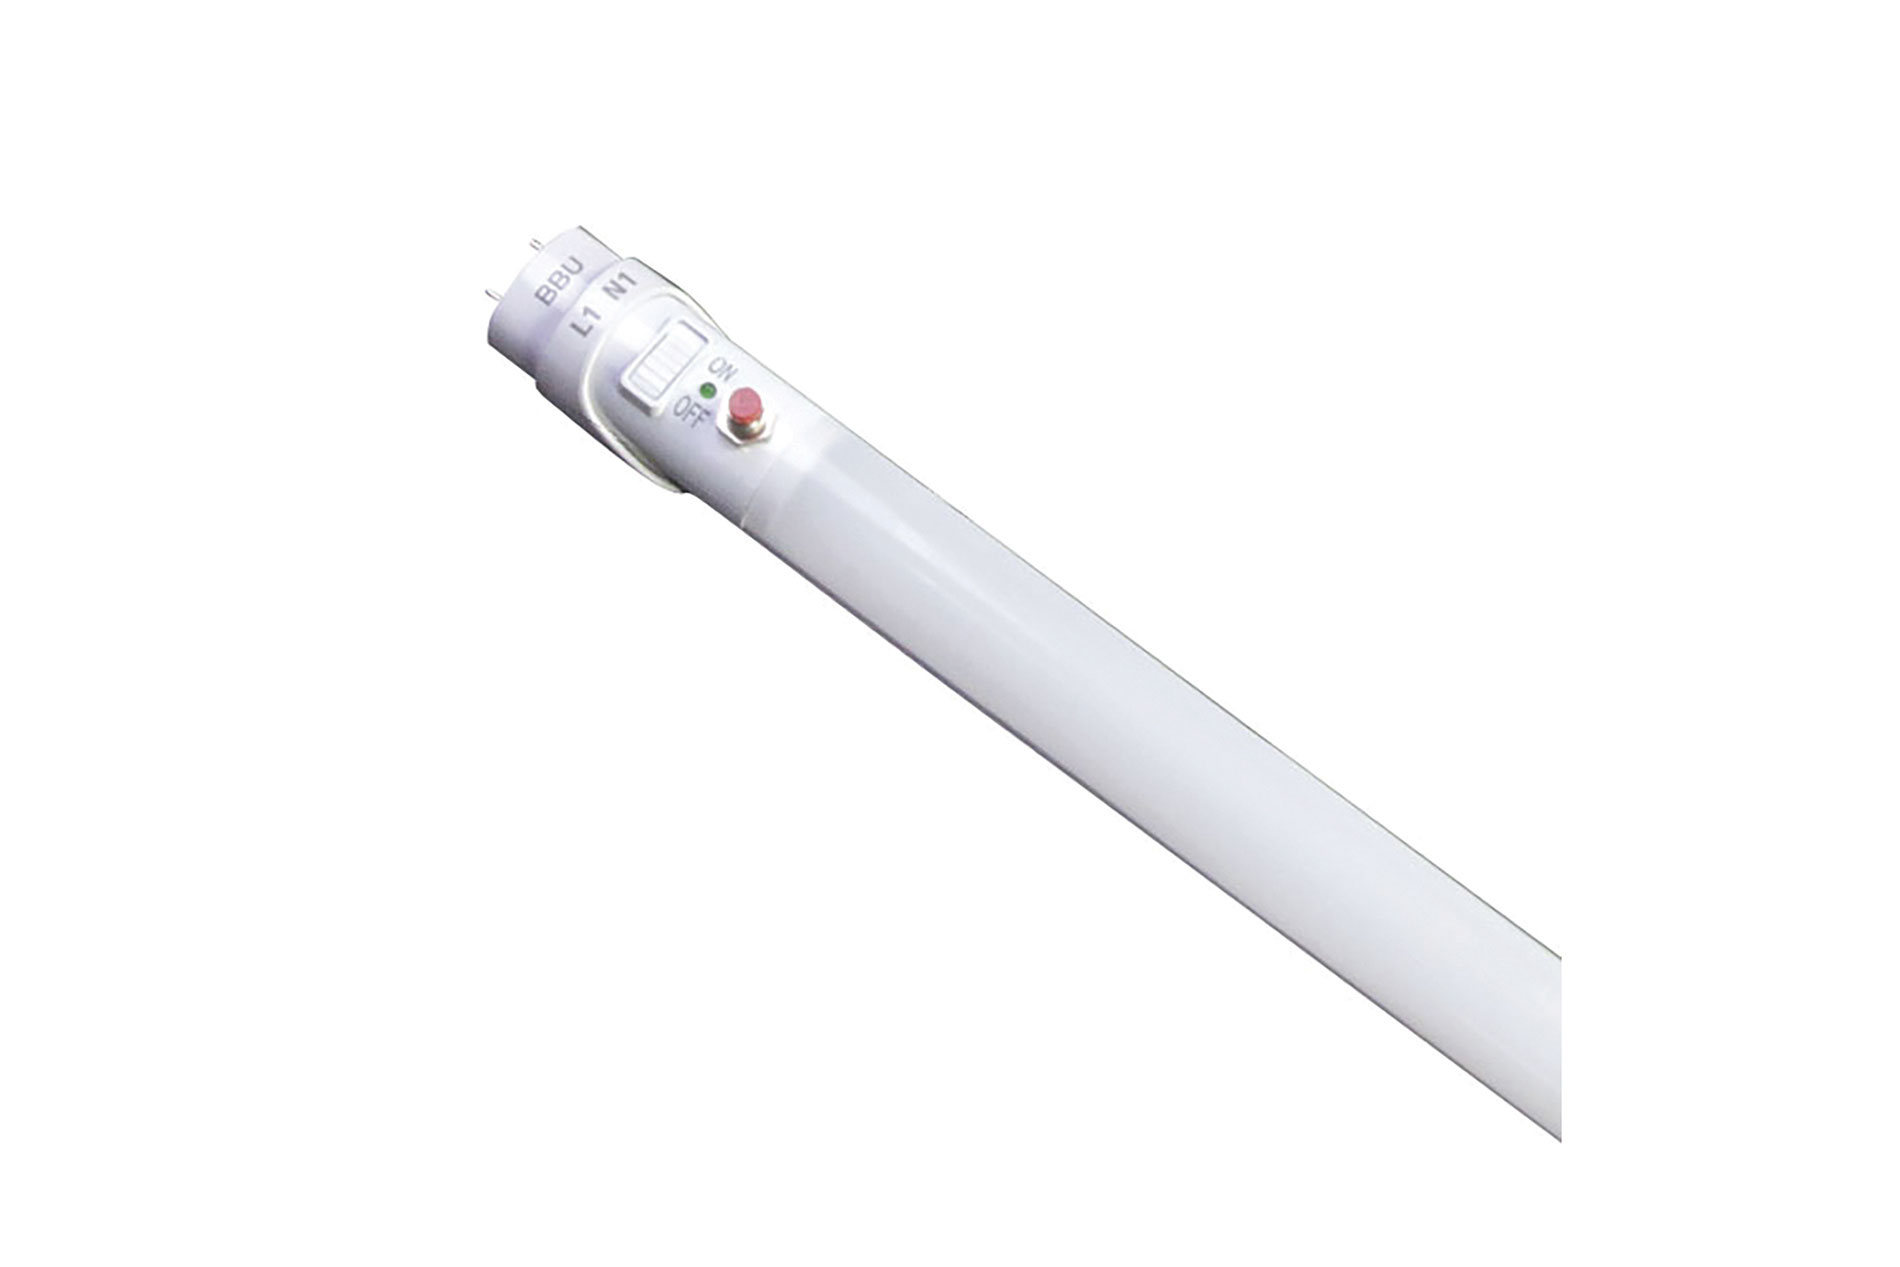 White LED tube. Image by TCP.